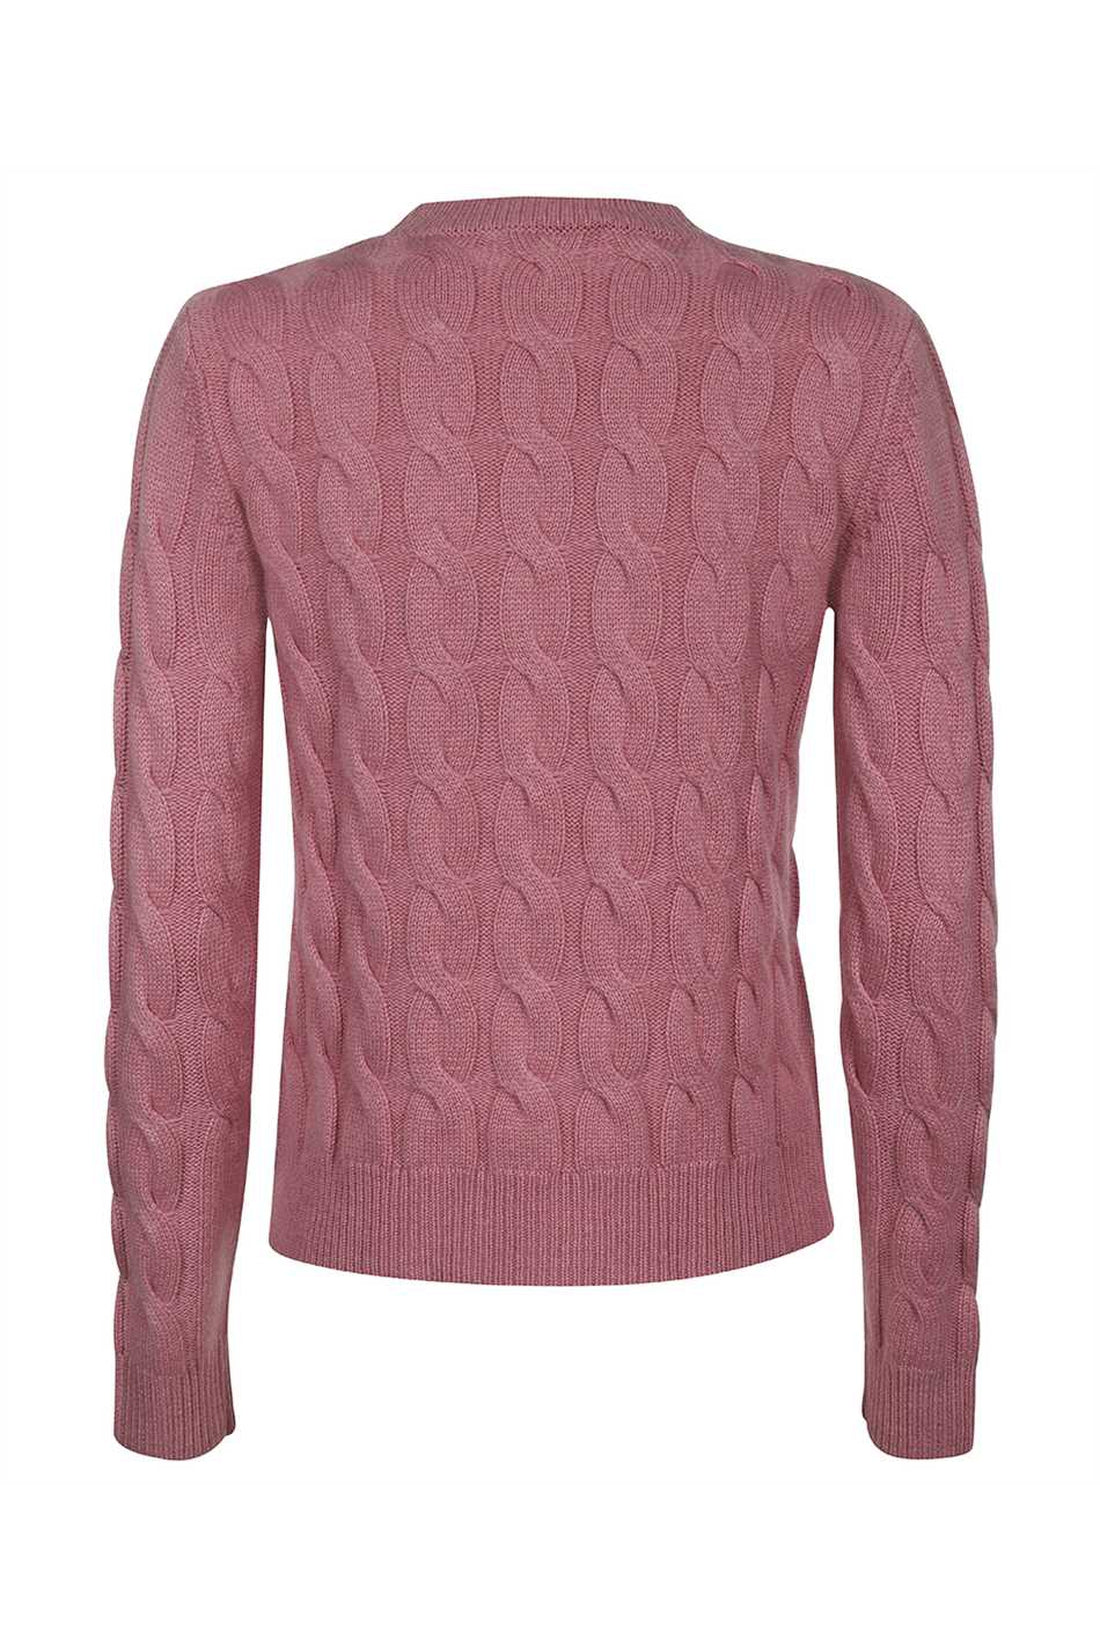 Max Mara-OUTLET-SALE-Edipo crew-neck cashmere sweater-ARCHIVIST